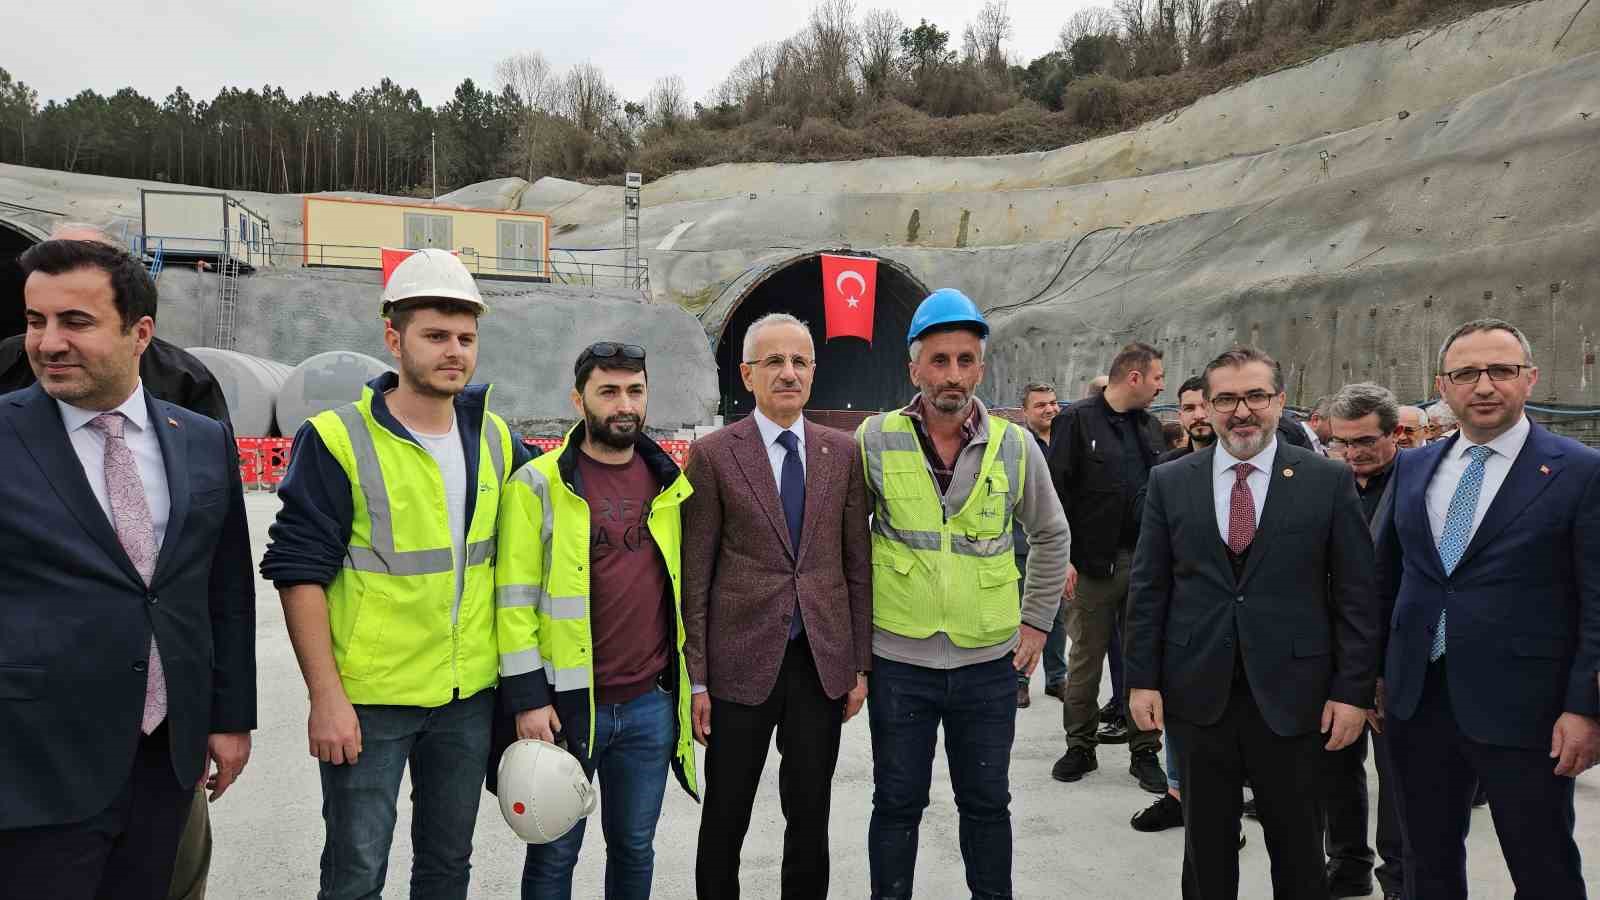 Ulaştırma ve Altyapı Bakanı Uraloğlu: "Kilyos Tüneli, 2026 yılı sonunda hizmete açılacak"
